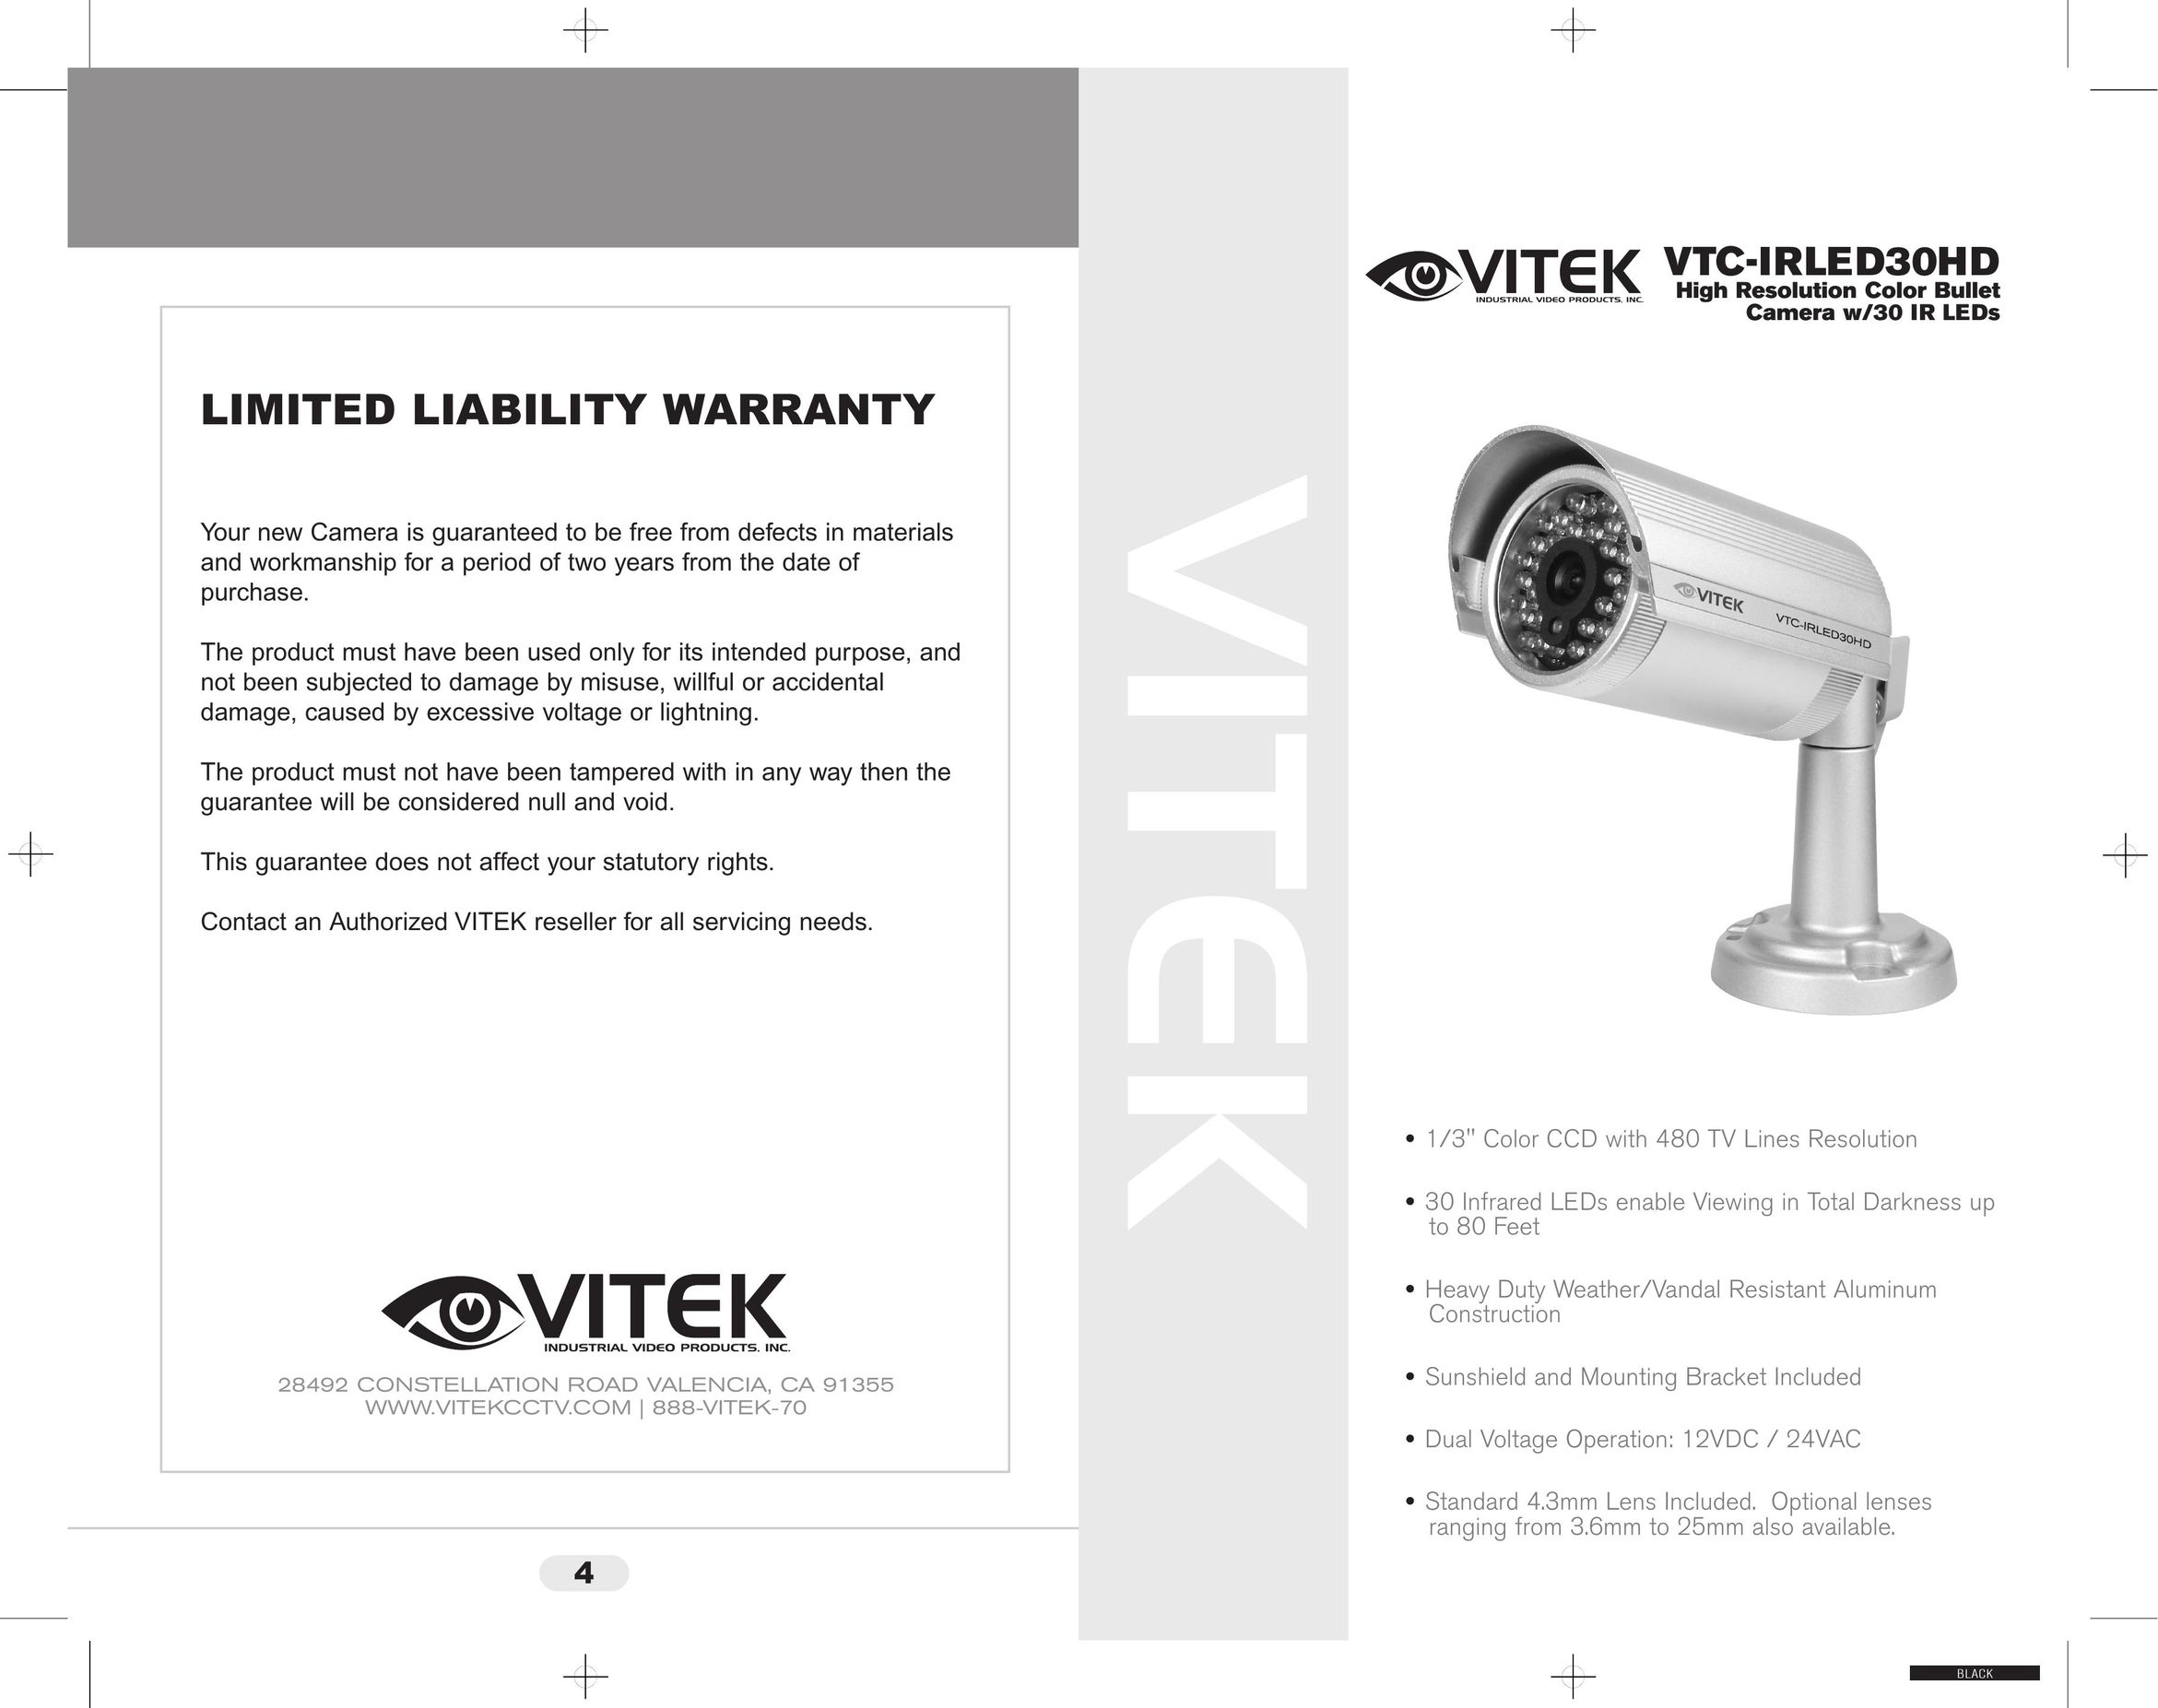 Vivitek VTC-IRLED30HD Home Security System User Manual